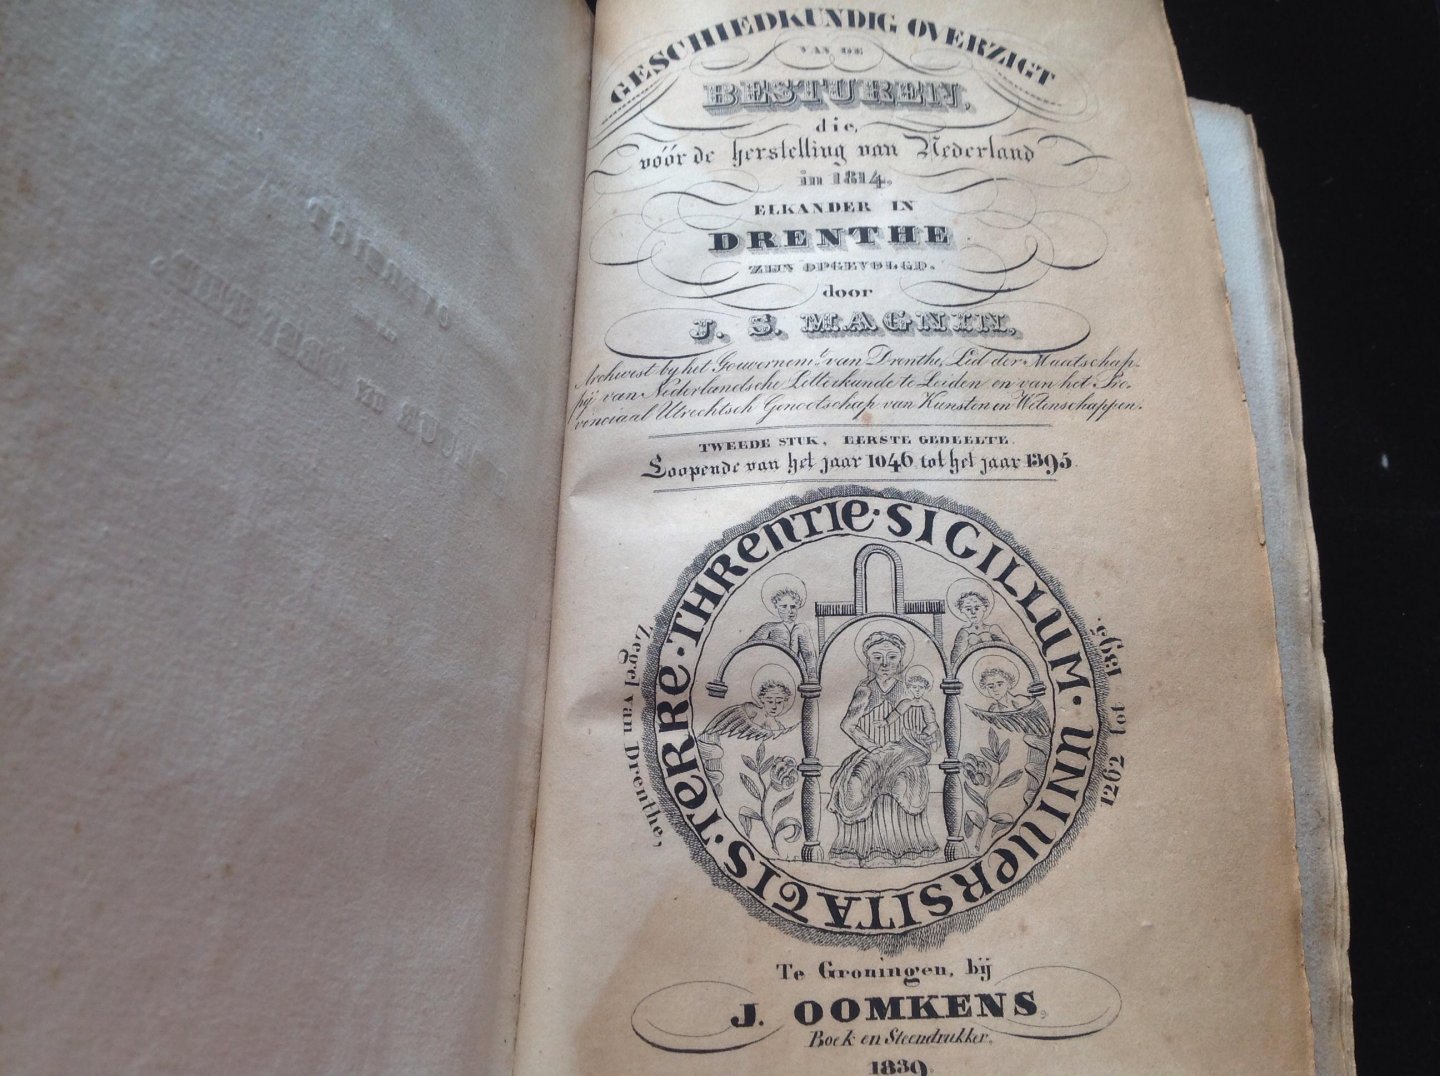 Magin, J.S. - Geschiedkundig overzigt  van Nederland in 1814, elkander in Drenthe tweede  stuk, eerste gedeelte